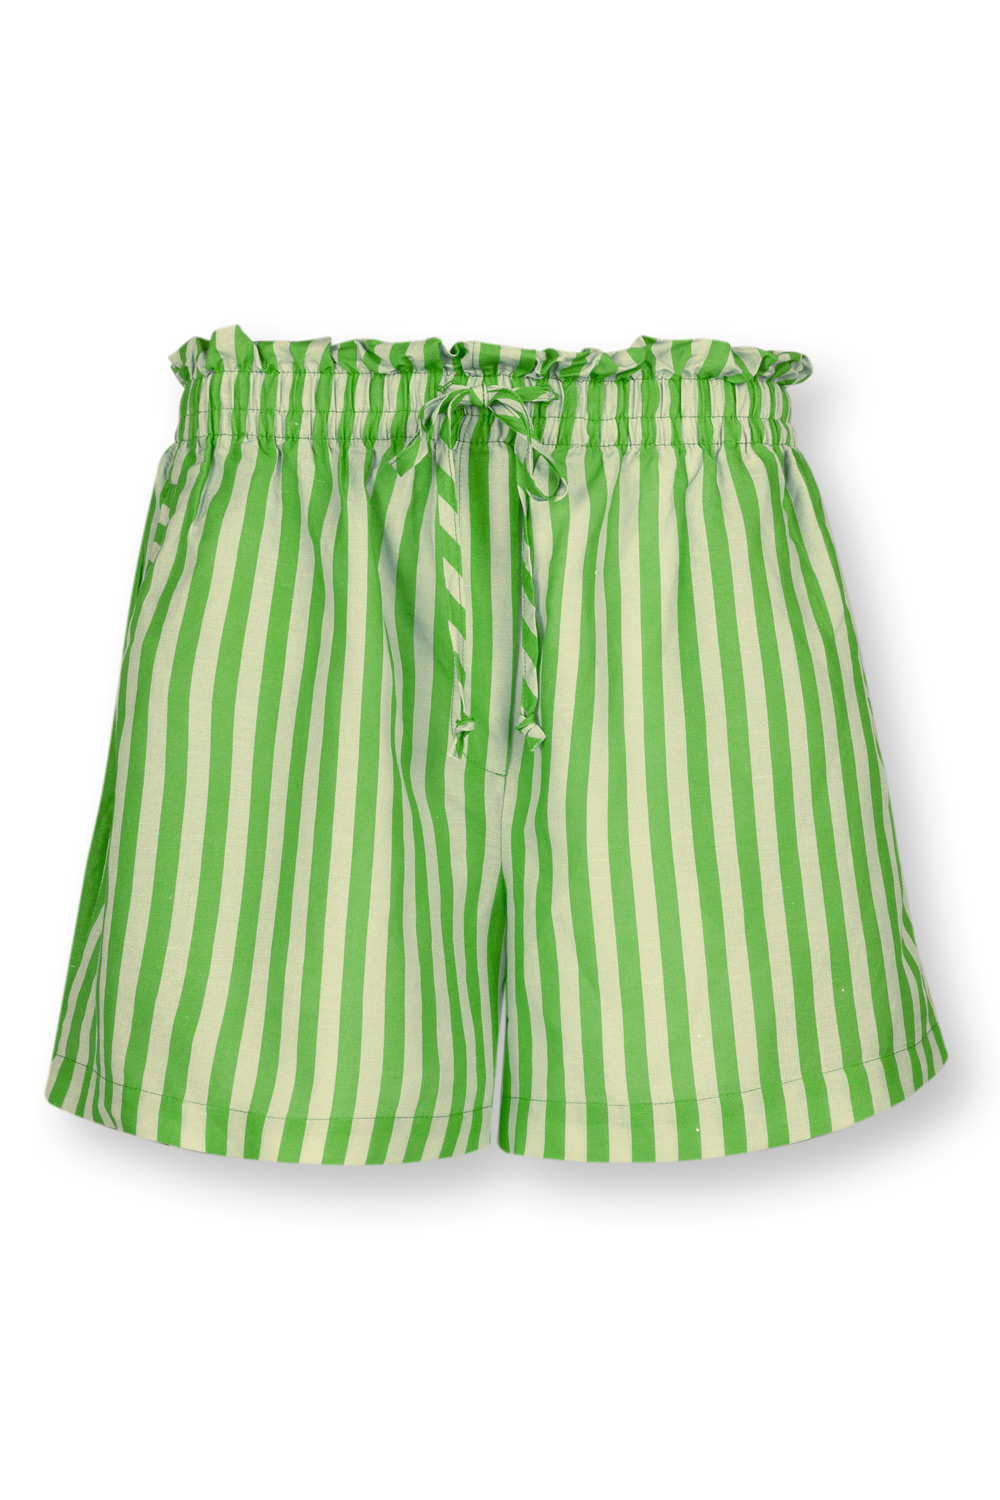 Pip Studio Bonita Sumo Stripe Shorts Lifestyle 42 grün günstig online kaufen